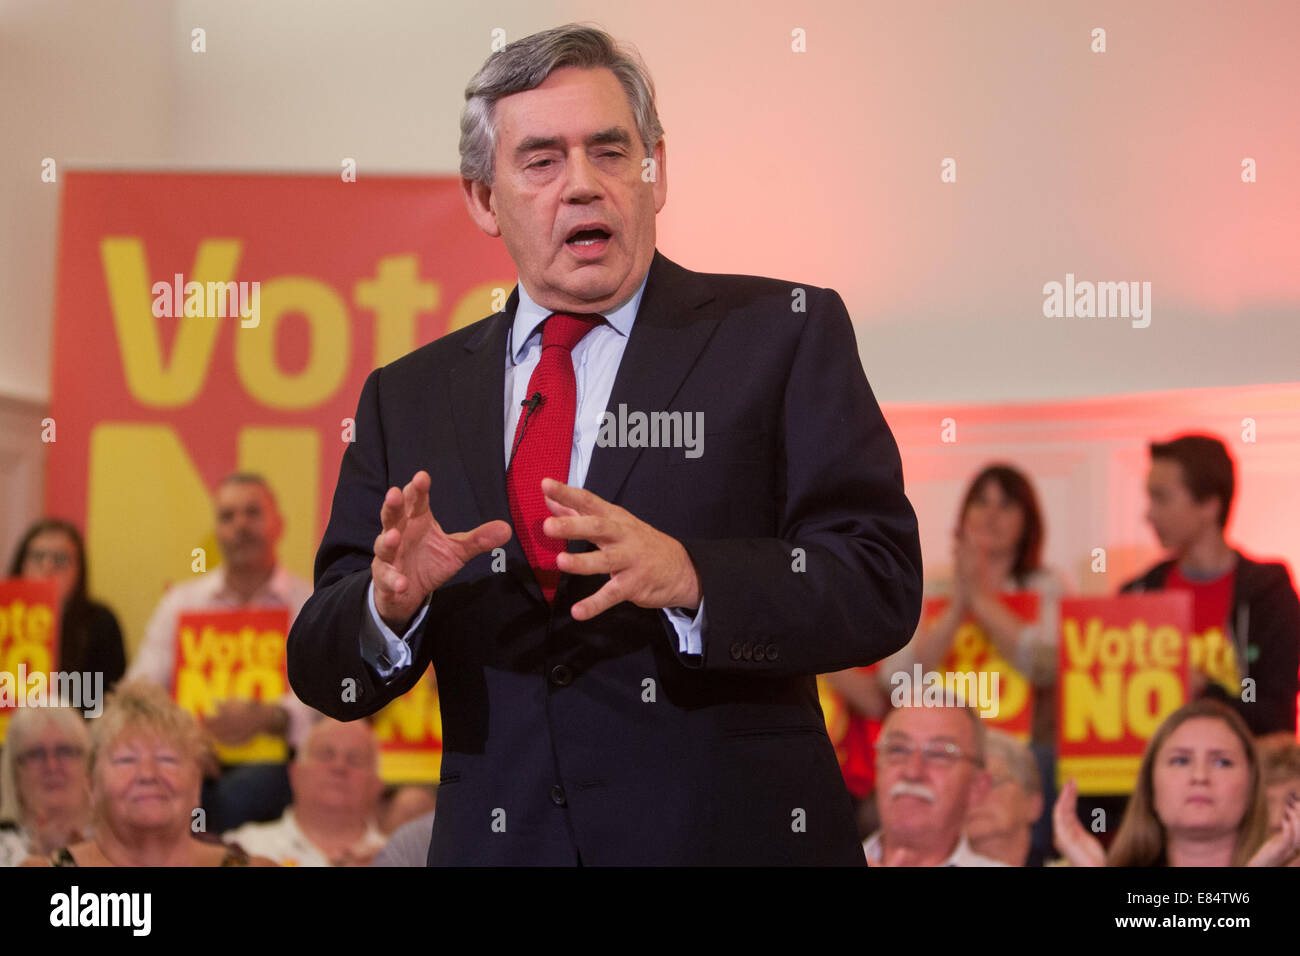 Gordon Brown, ex Primer Ministro, el trabajo político, durante la campaña del referéndum de independencia escocesa, Glasgow, Escocia. Foto de stock